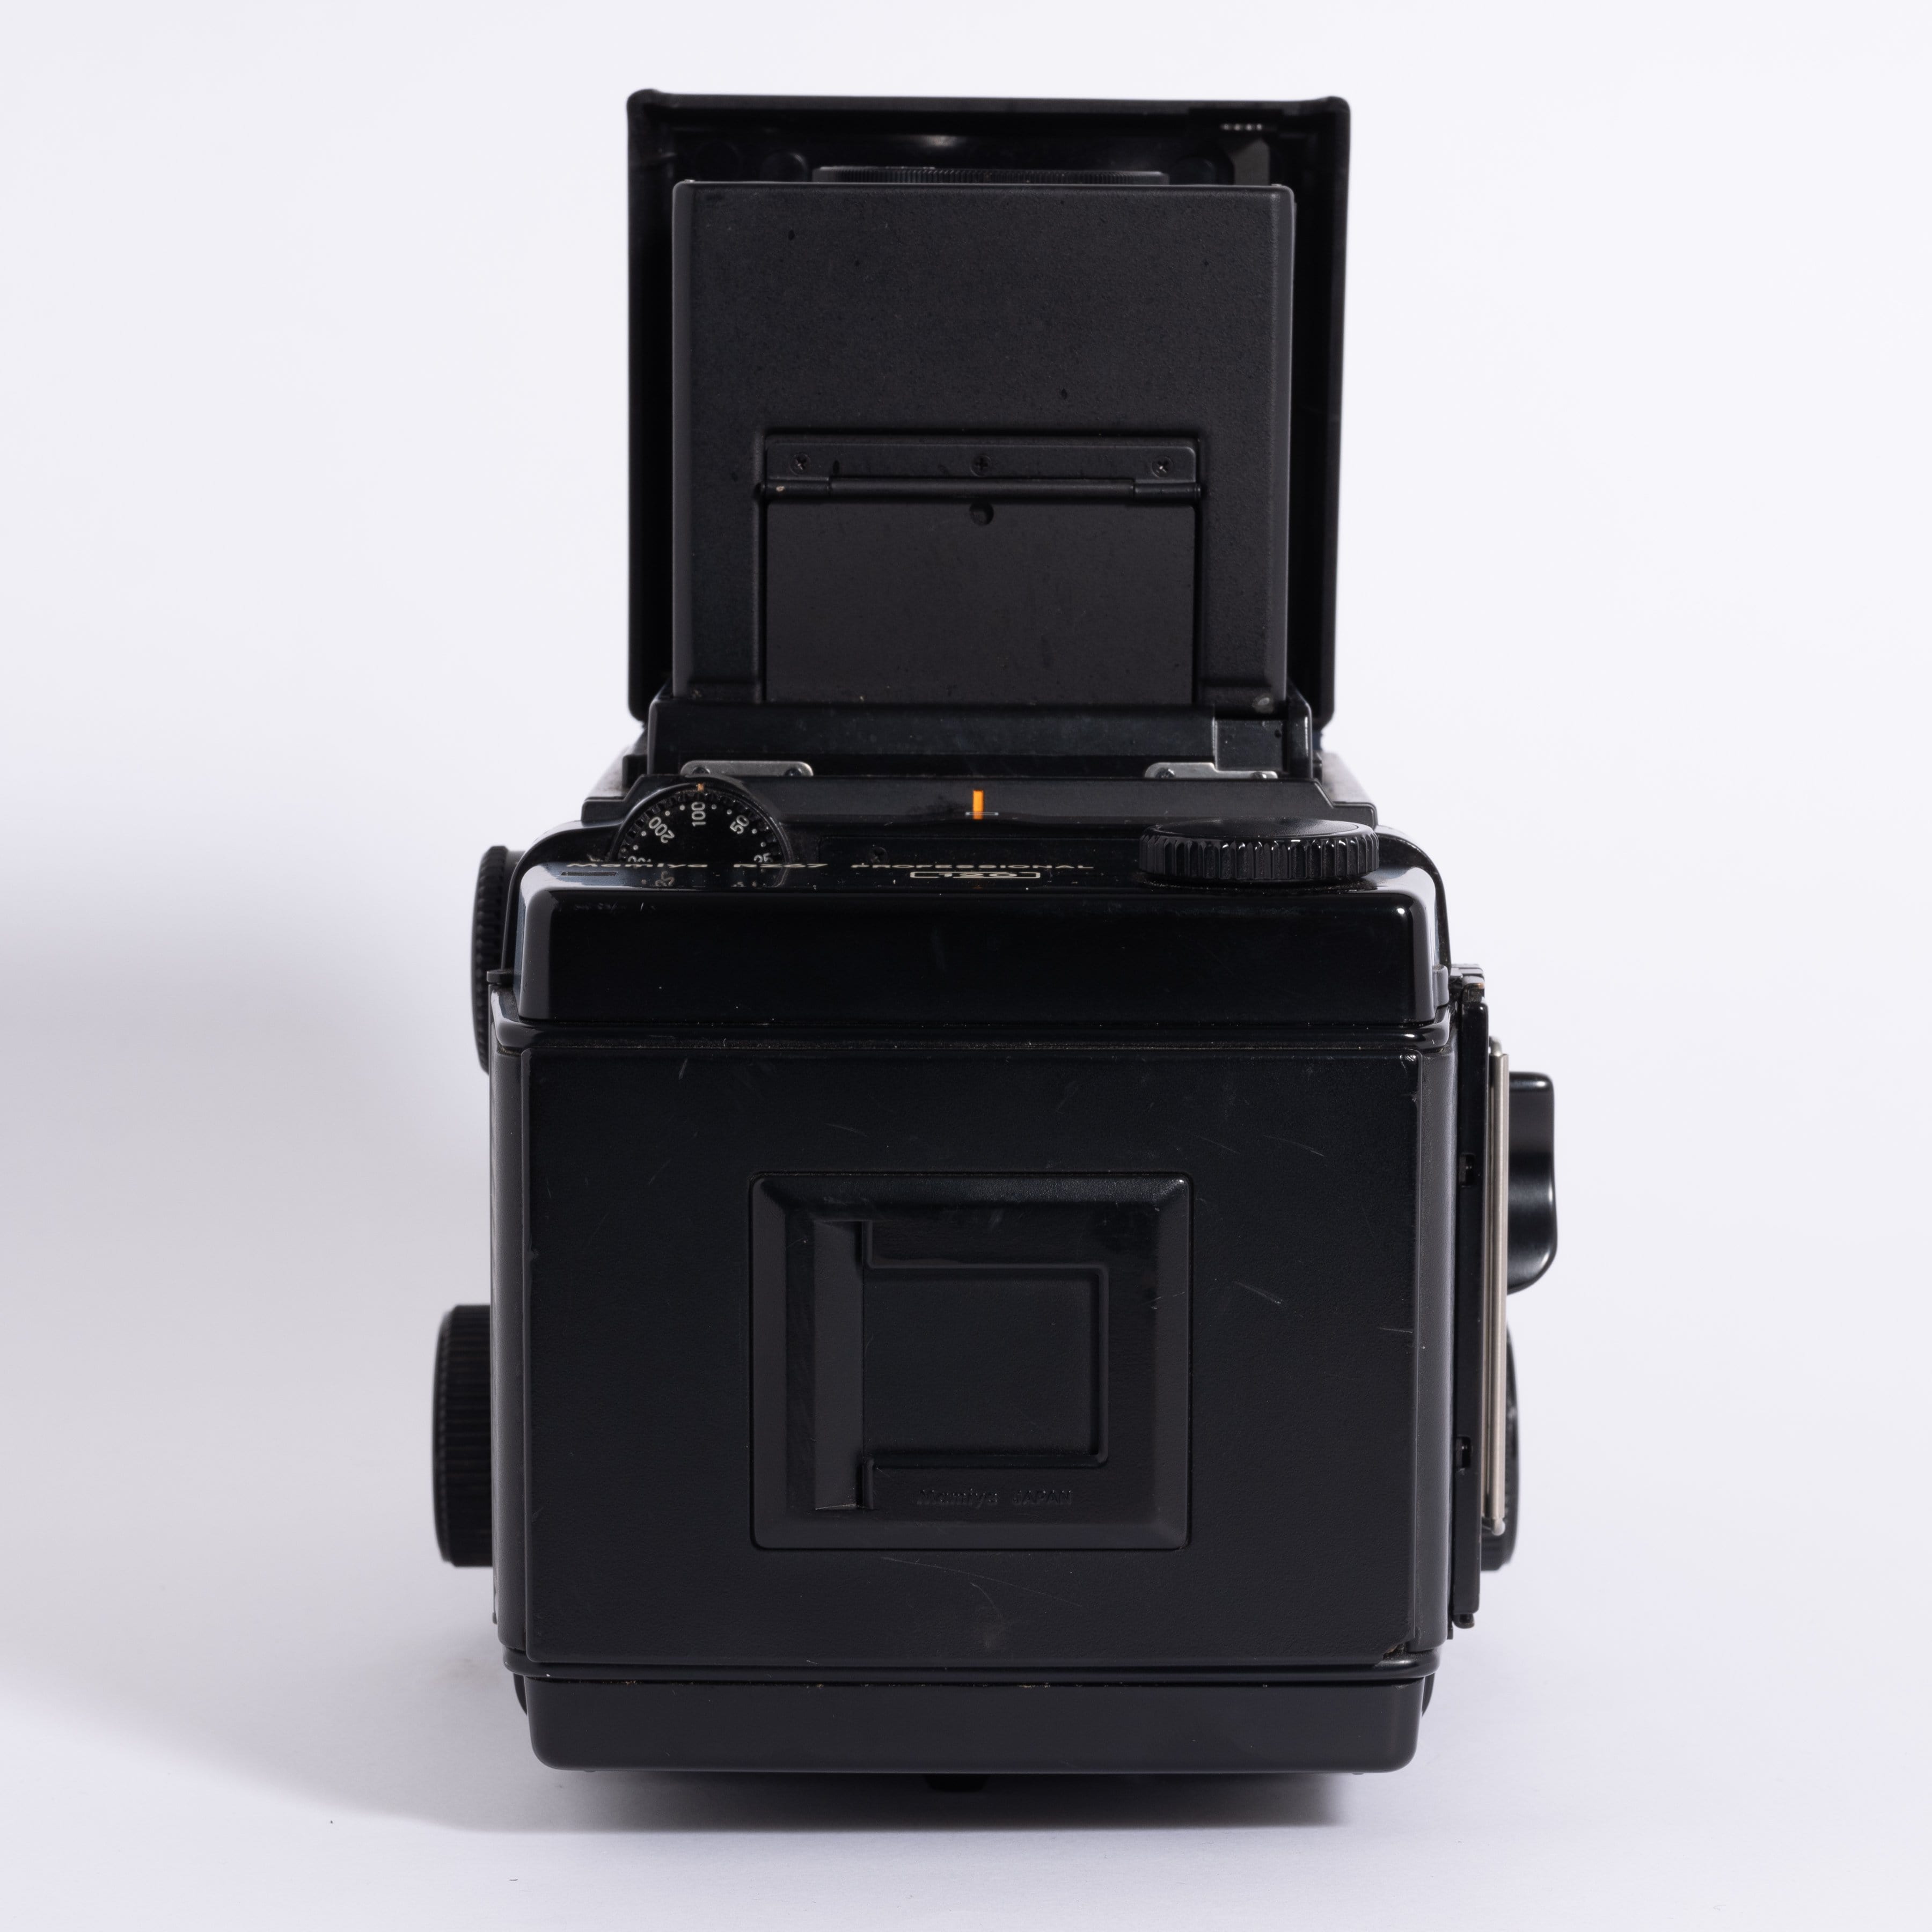 Mamiya RZ67 Professional with Mamiya-Sekor 127mm f/3.5 Lens – Film Supply  Club